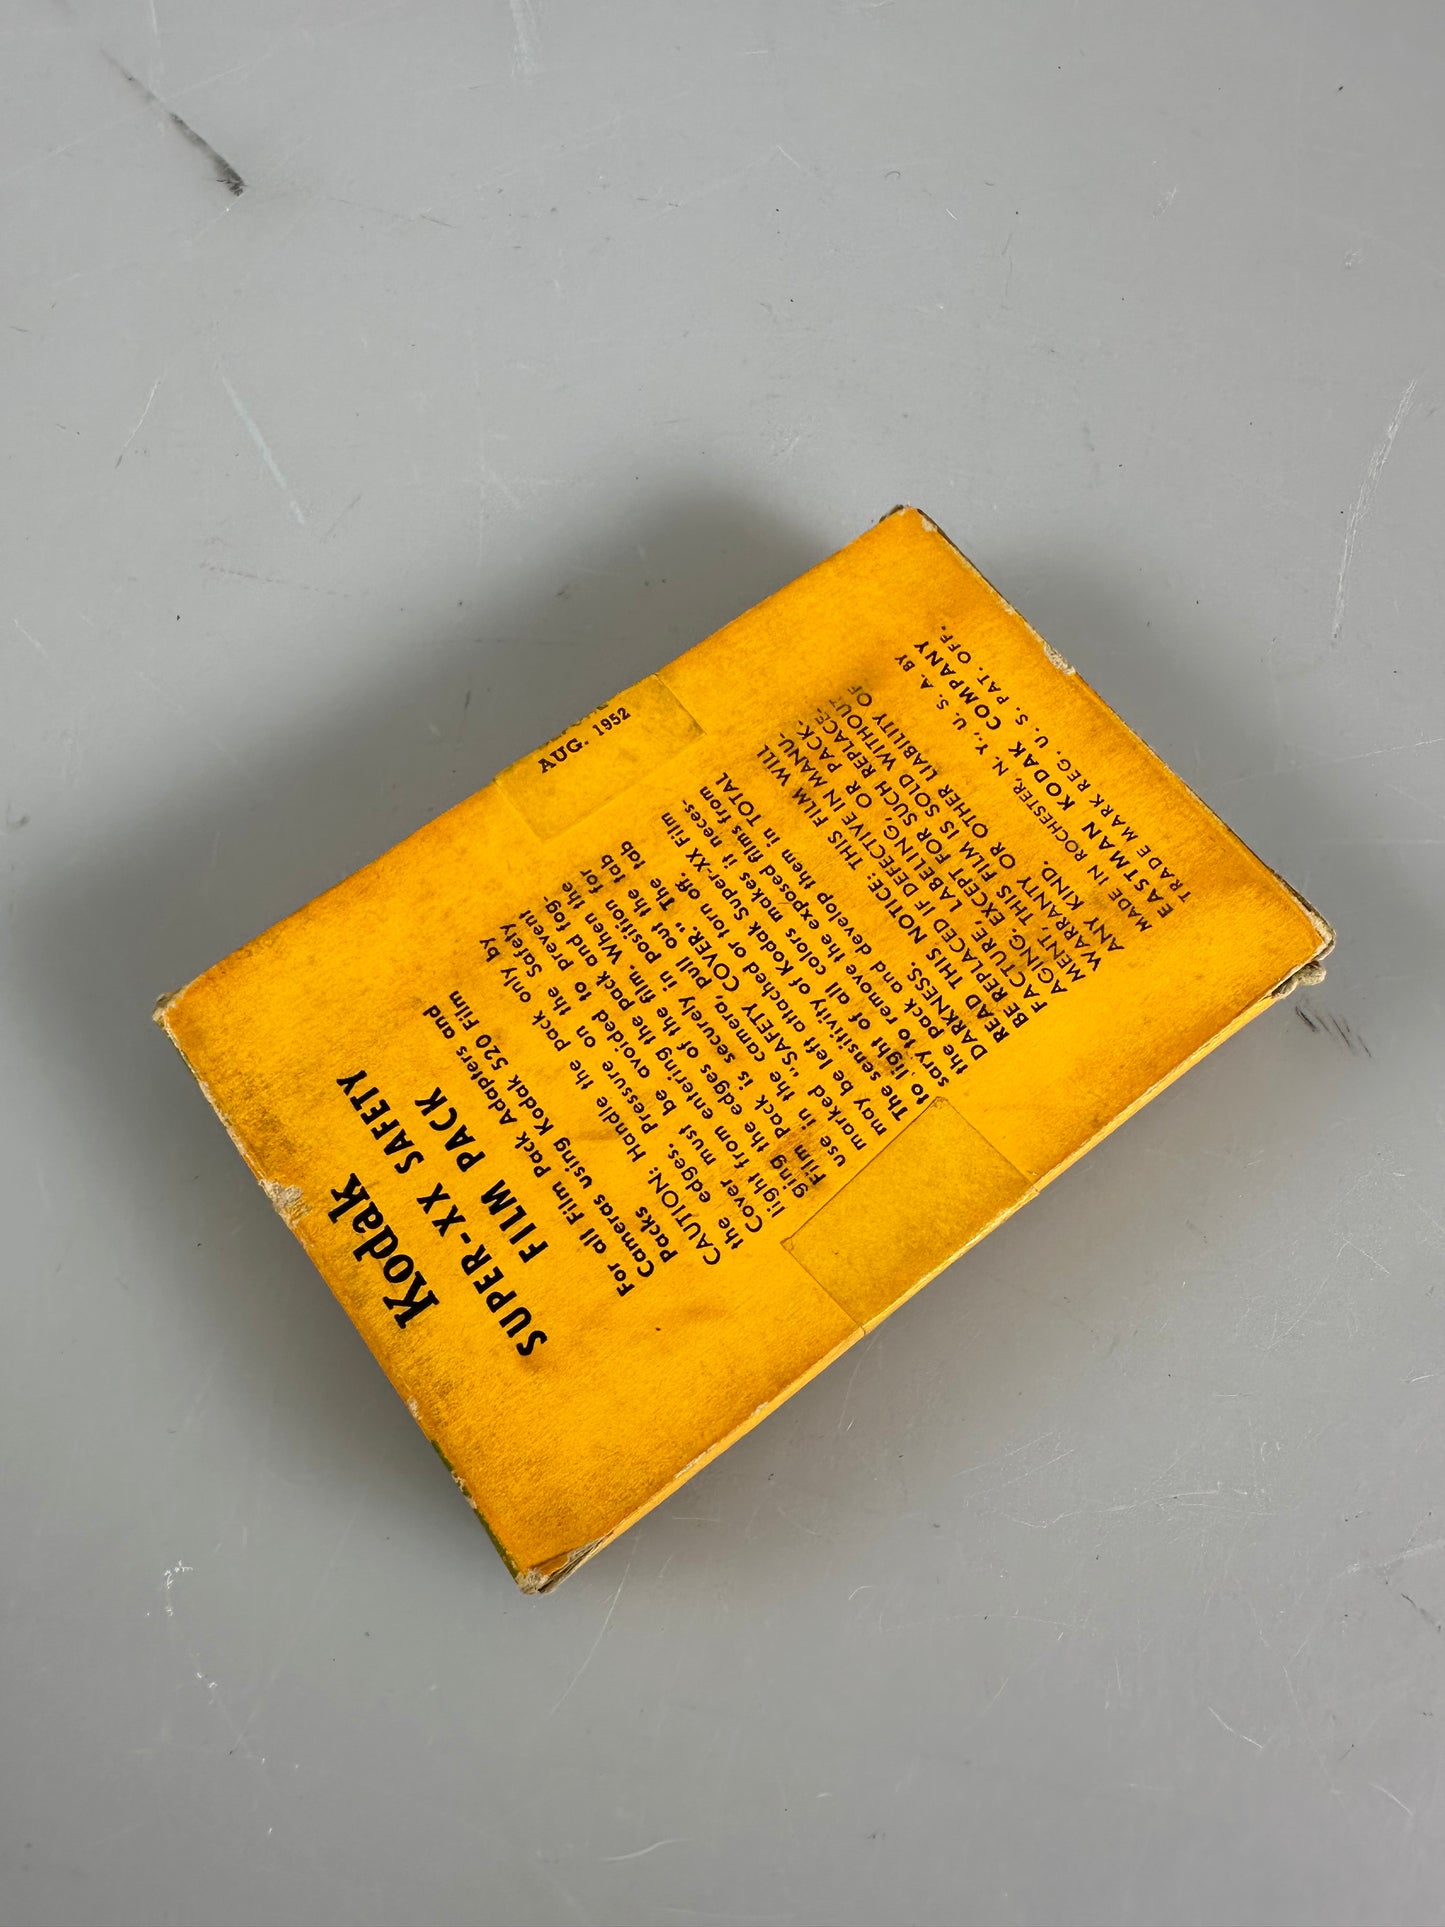 Kodak Sheet Film Super-XX Panchromatic 2 ¼ x 3 ¼ - 2x3 film pack XX 520